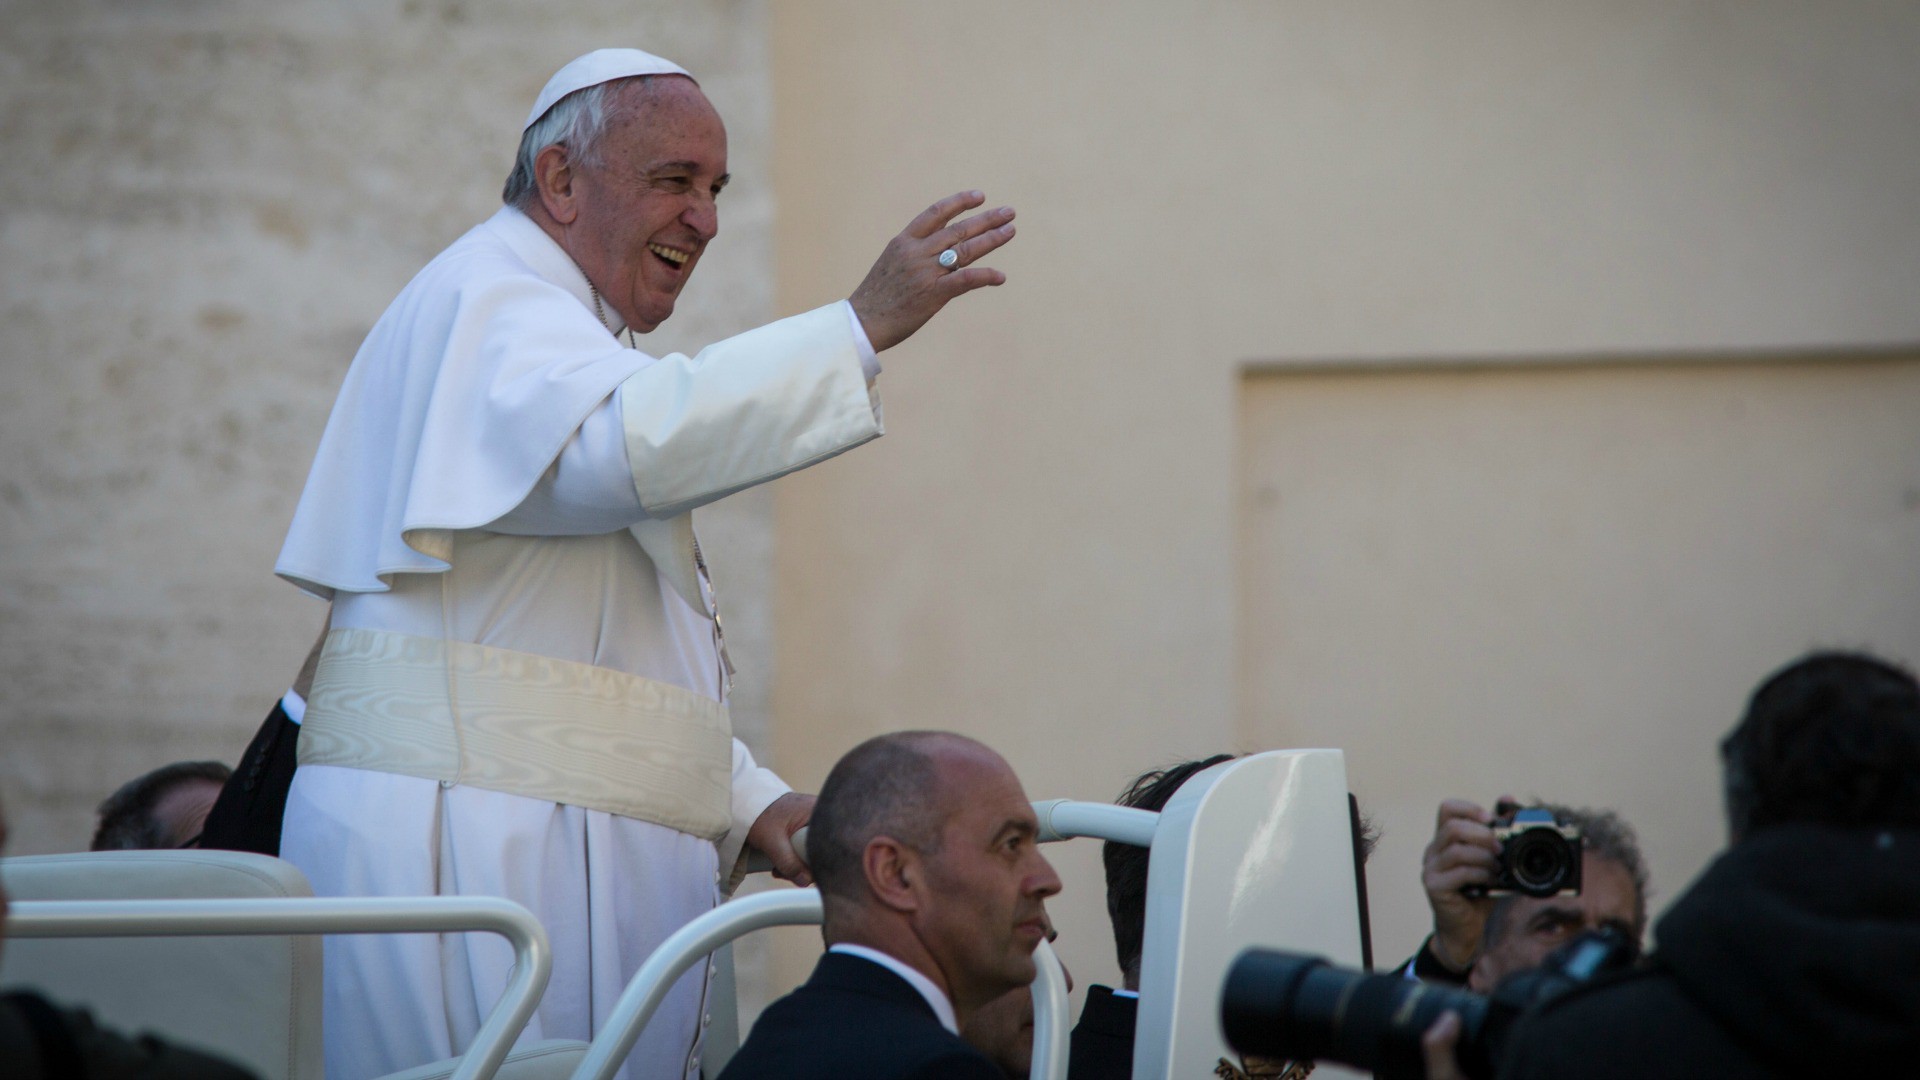 Le pape François lors d'une audience générale en 2015 (Photo: Andrea Krogmann)